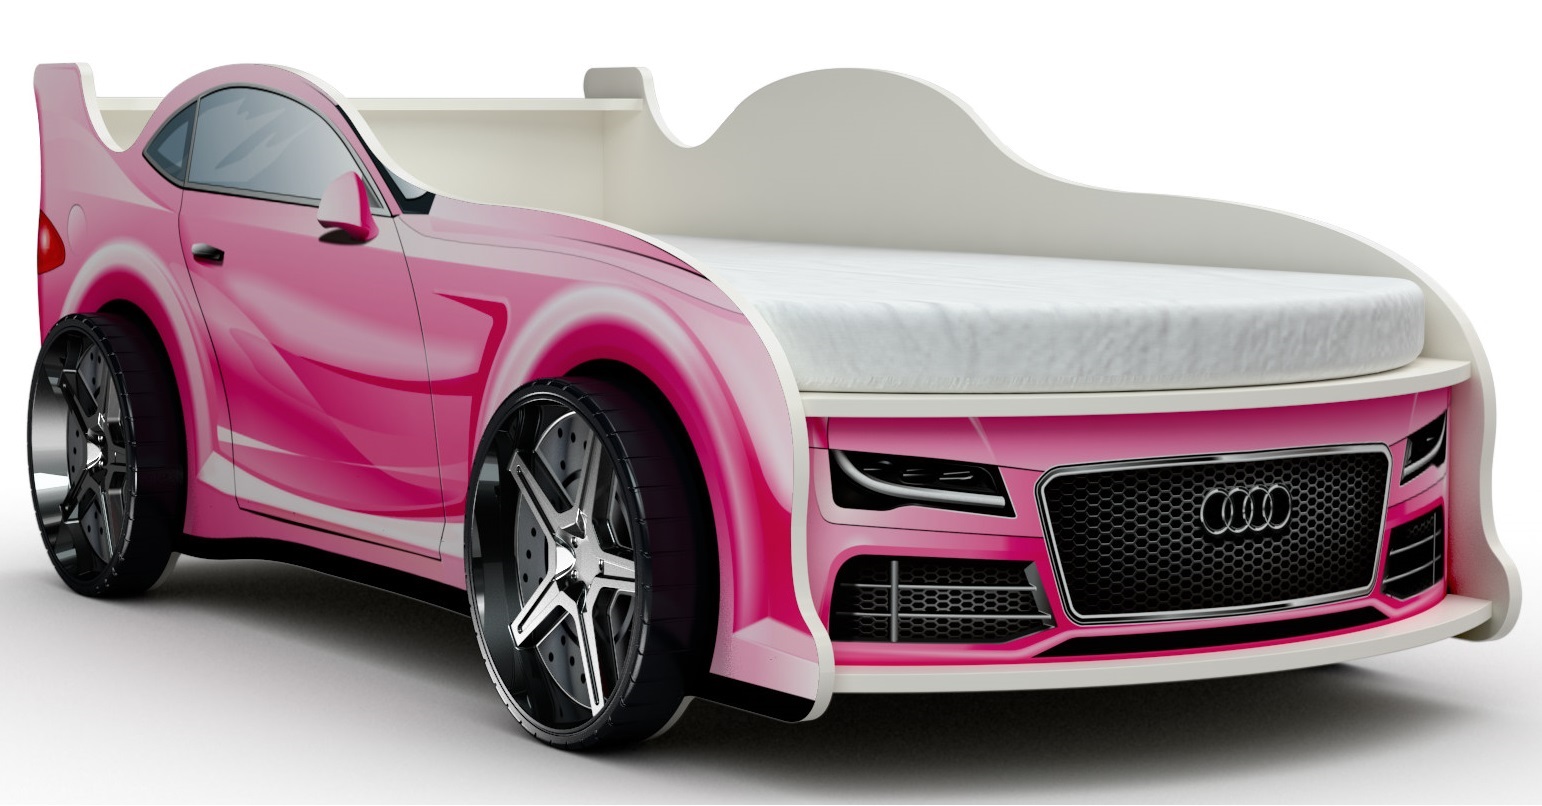 Детская кровать машина АУДИ с матрасом, ложе 180х80 см, фотопечать, ЛДСП, цвет розовый Vivera mebel